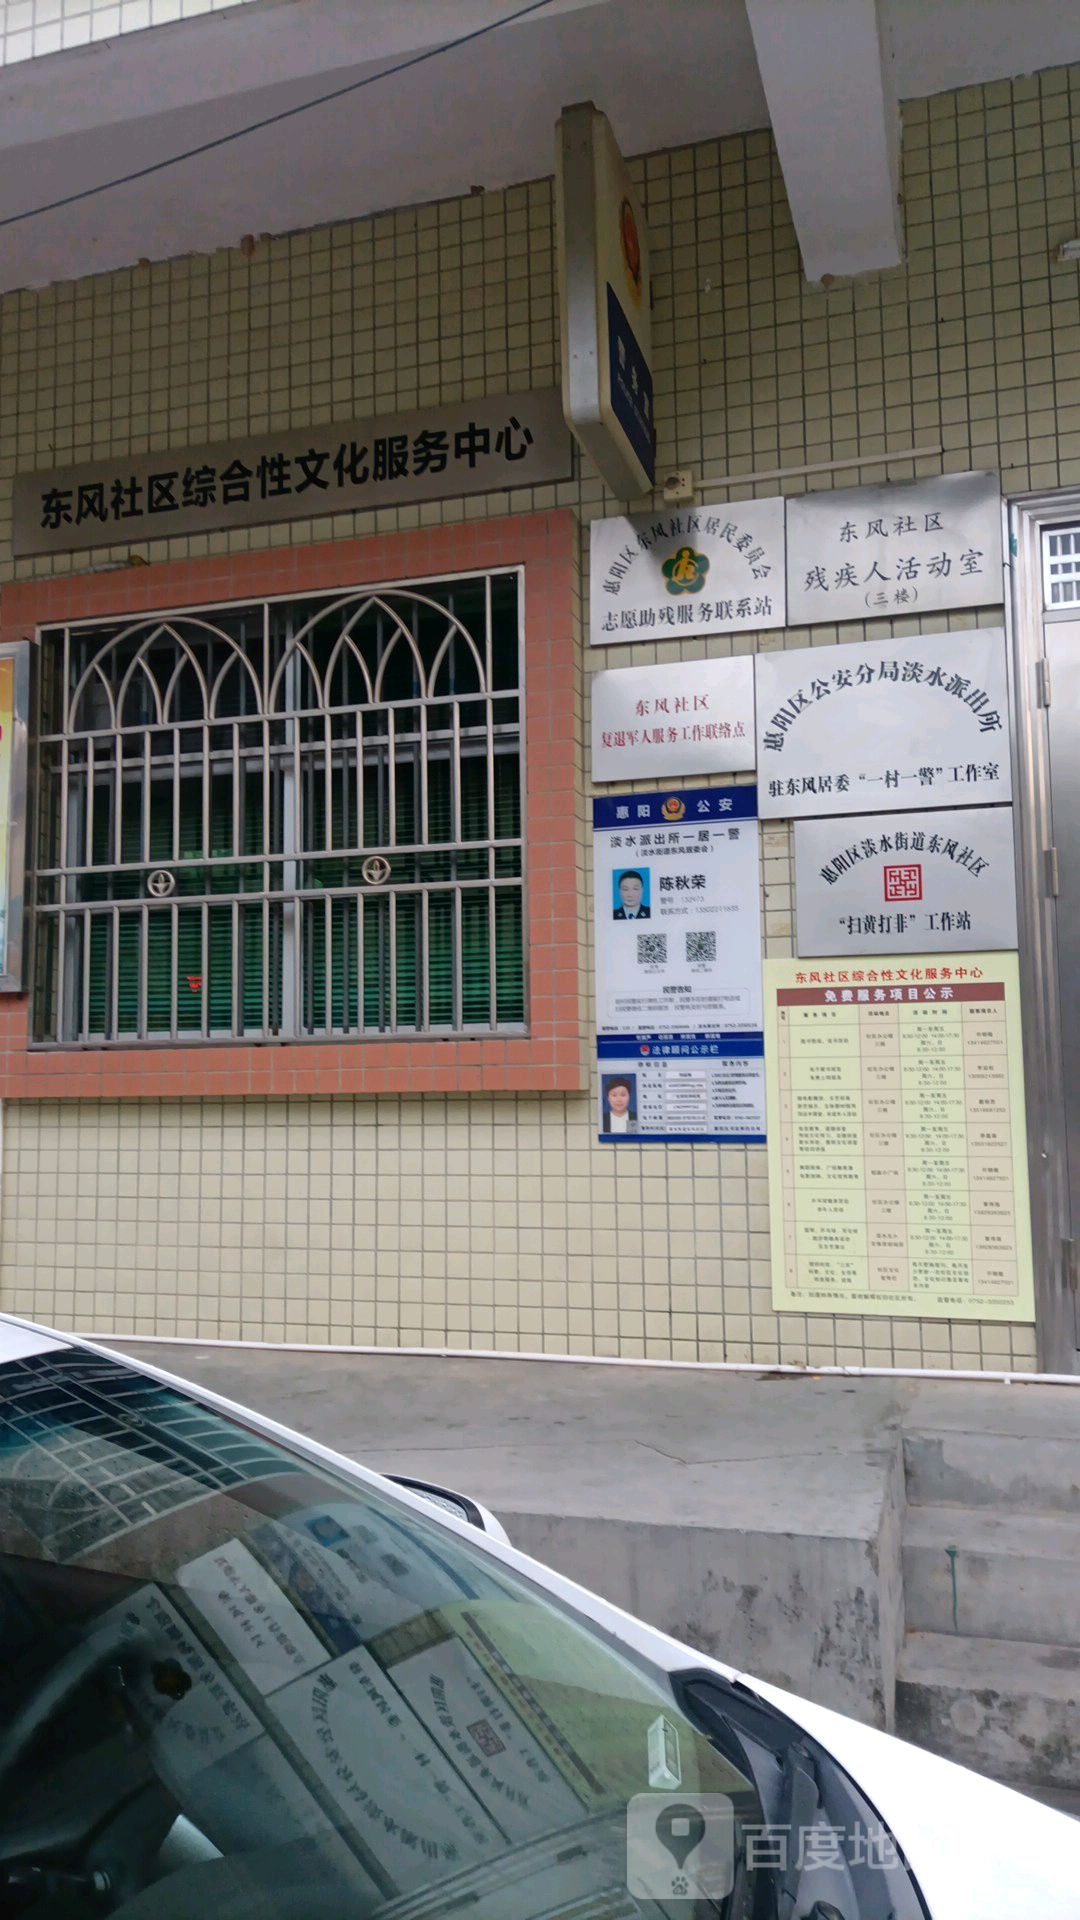 惠州市惠阳区祖庙前街惠阳博雅实验学校西南侧约80米